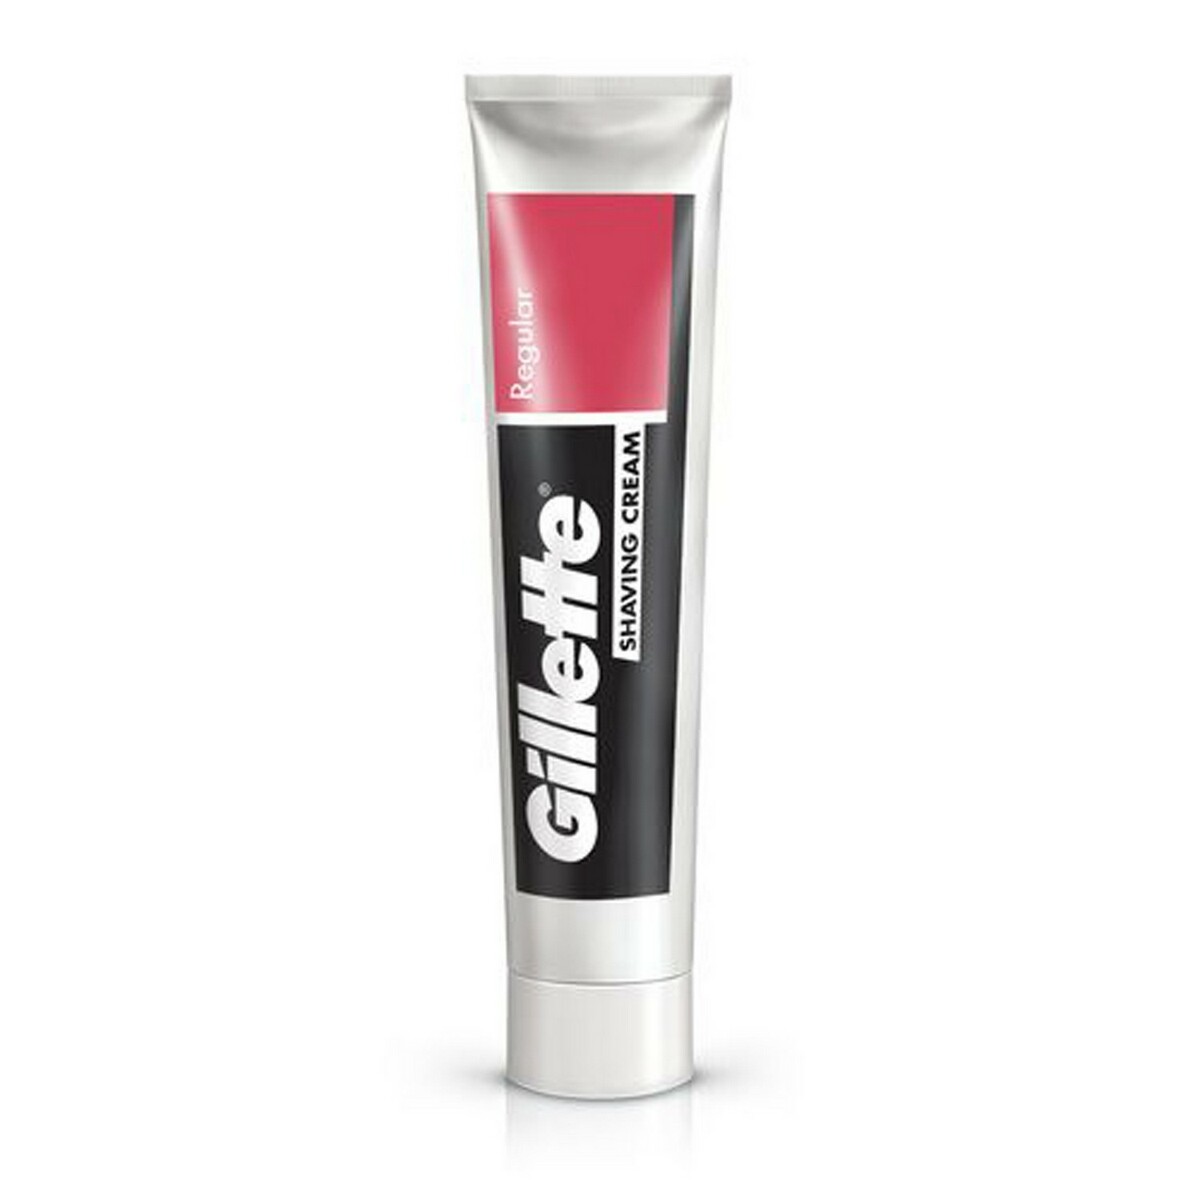 Gillette Shaving Cream Regular 30g